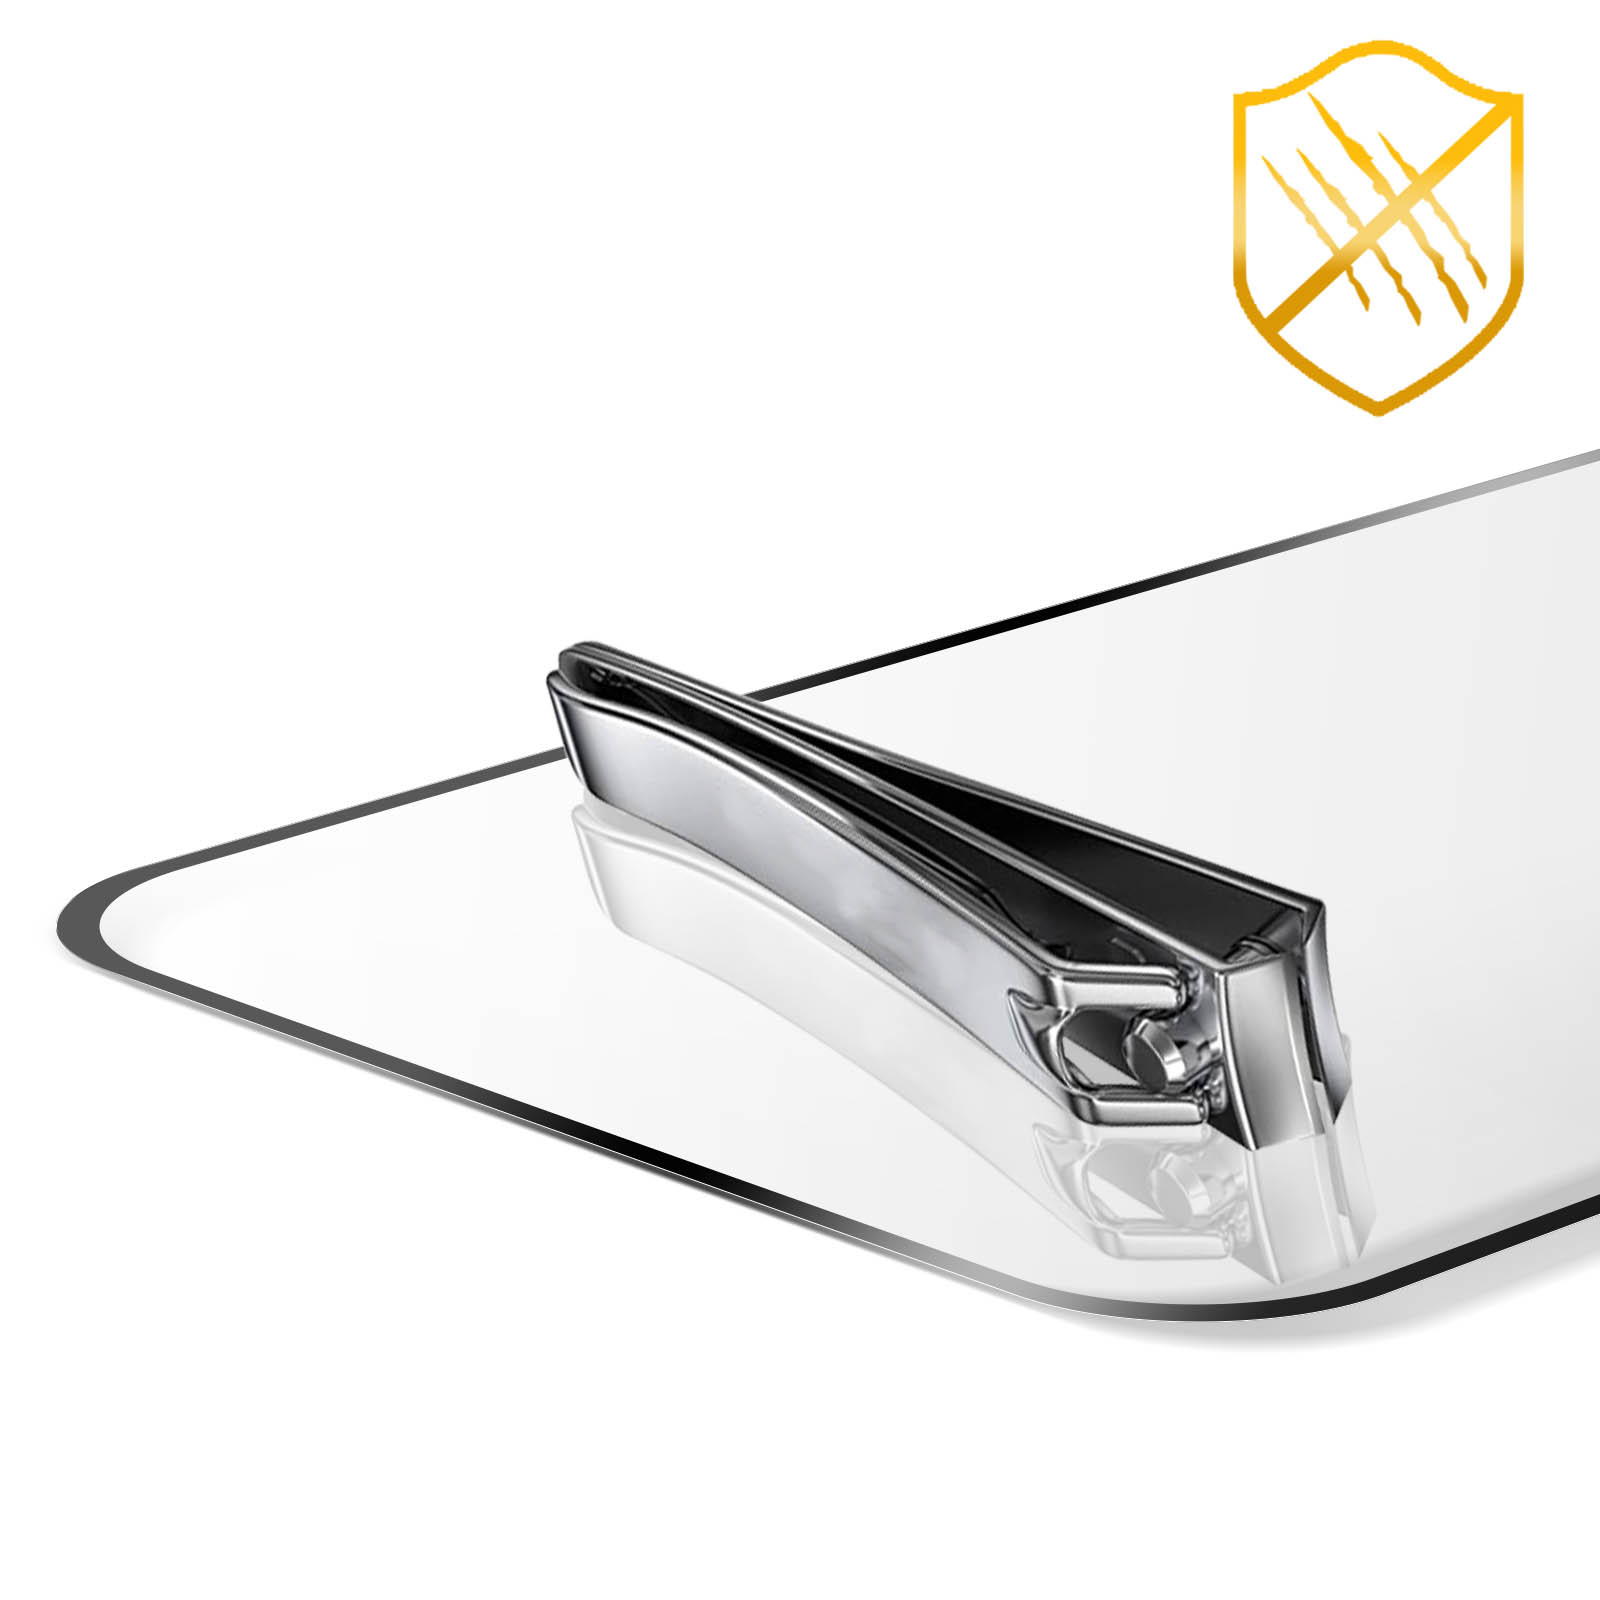 Tiger Glass Plus Verre Trempé 9H+ Apple iPhone 13 / 13 Pro